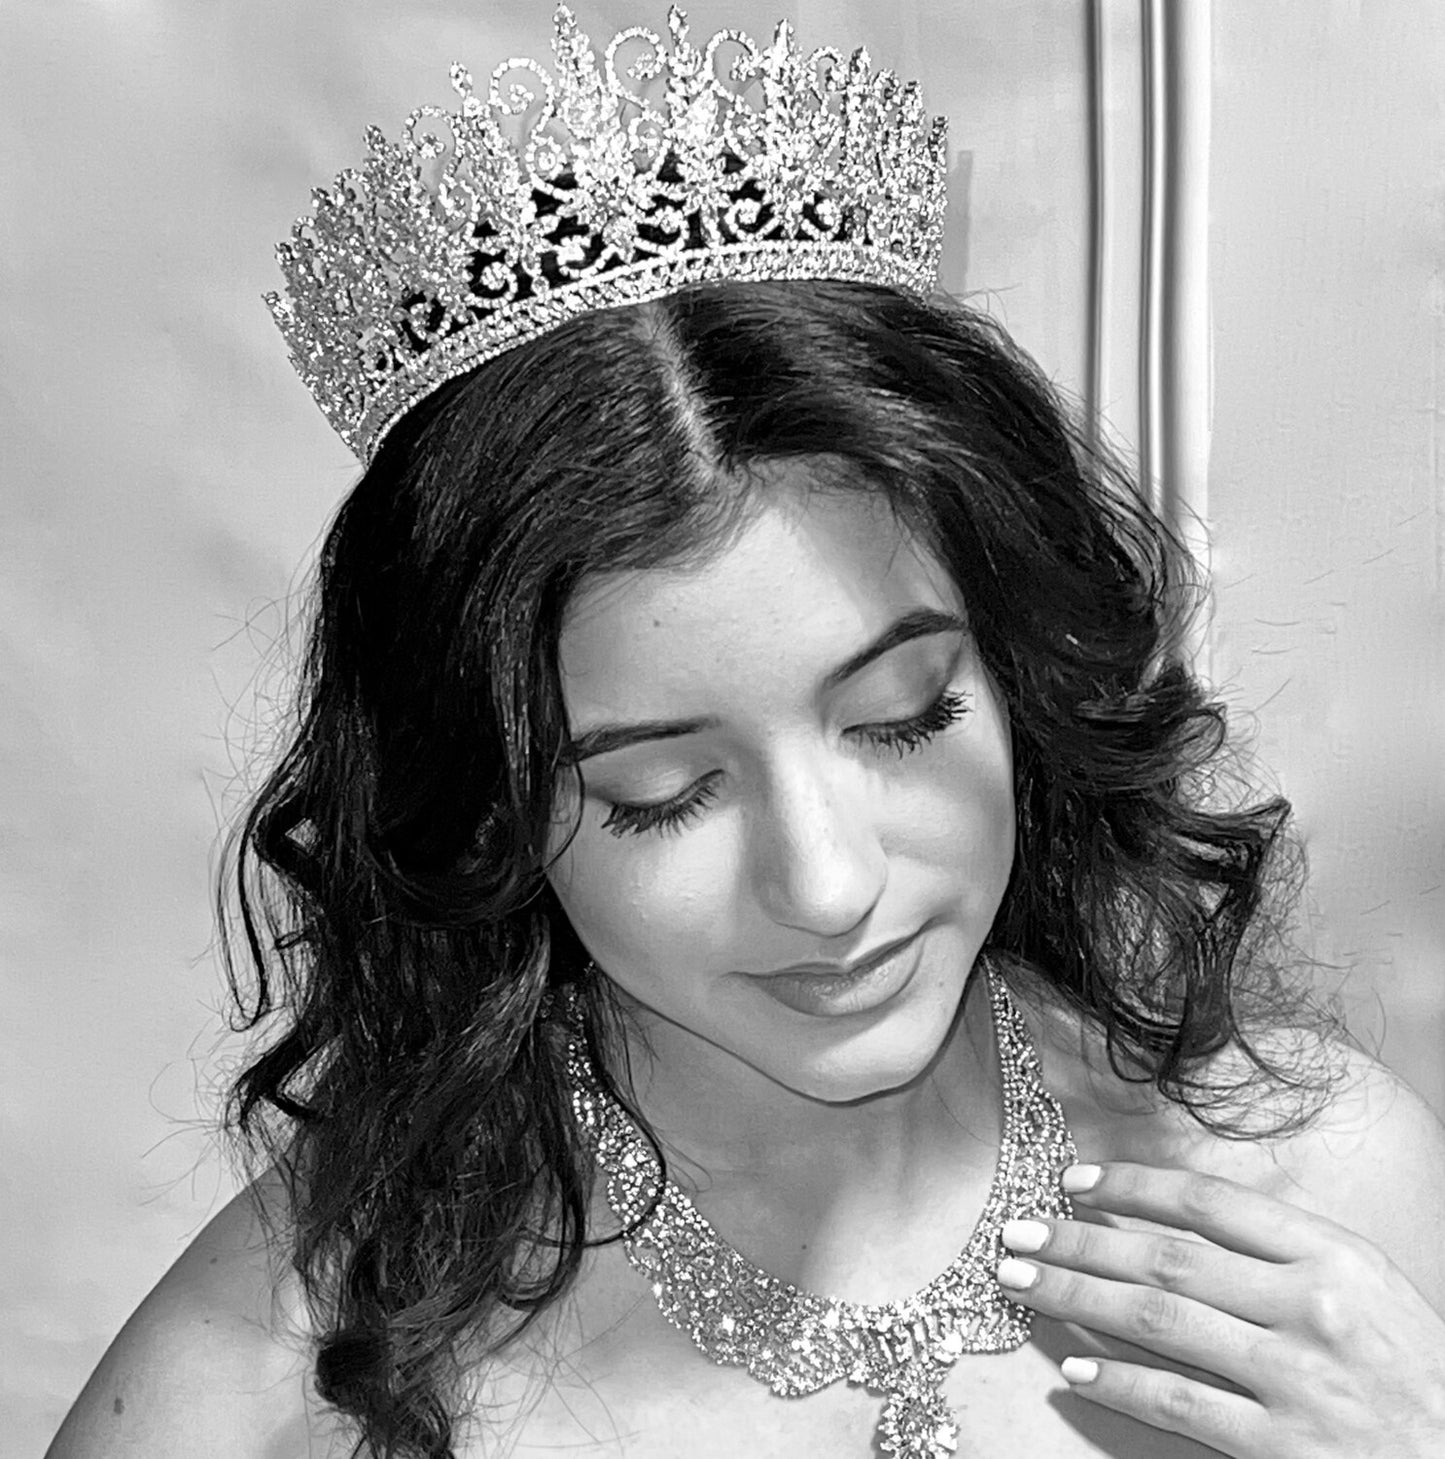 Giralda, Exquisite Royal Crystal wedding Tiara